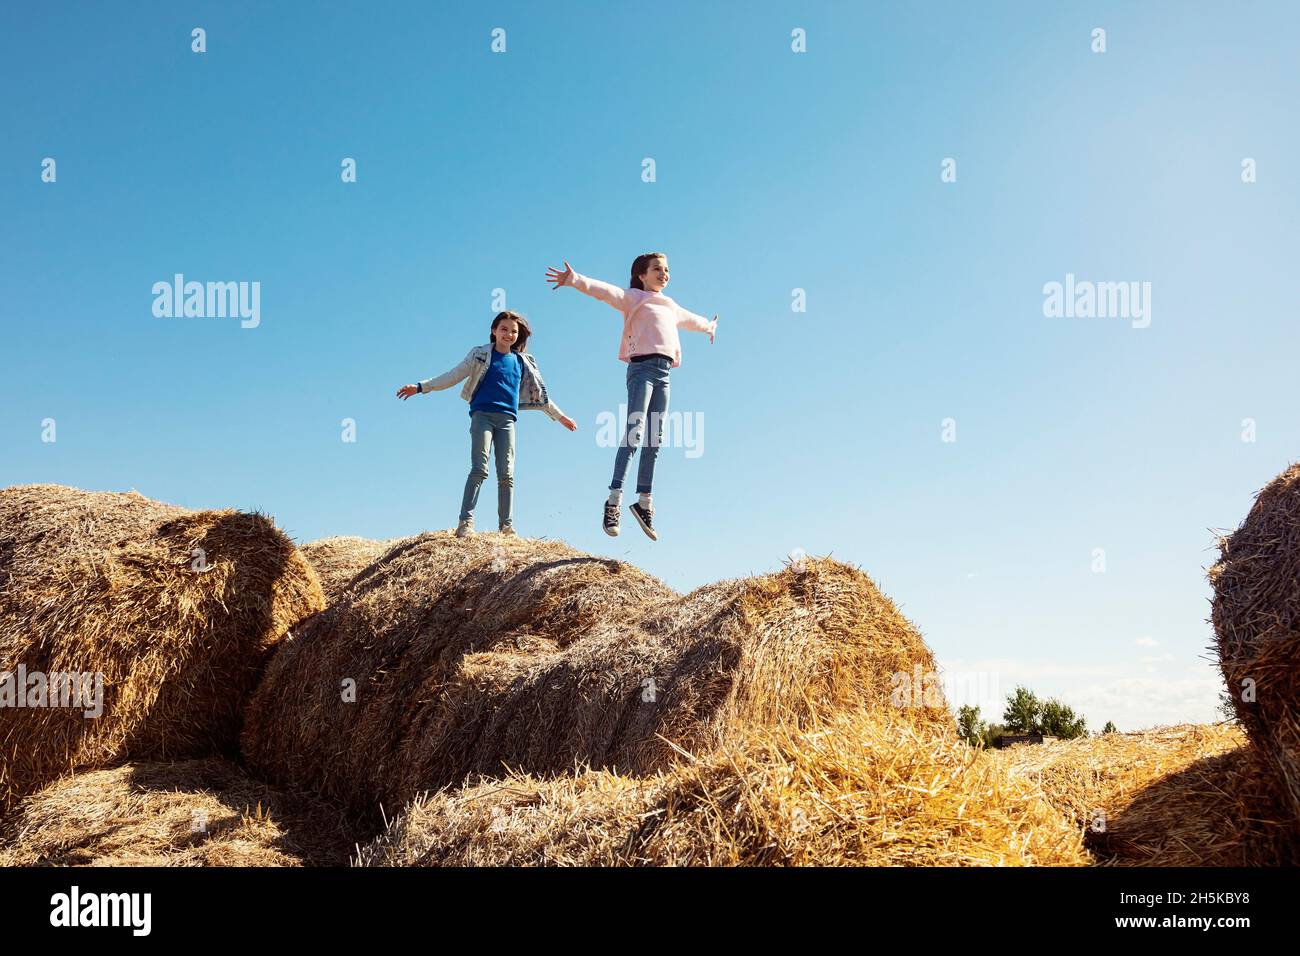 Deux jeunes sœurs jouant sur une pile de balles de foin; Alcomdale, Alberta, Canada Banque D'Images